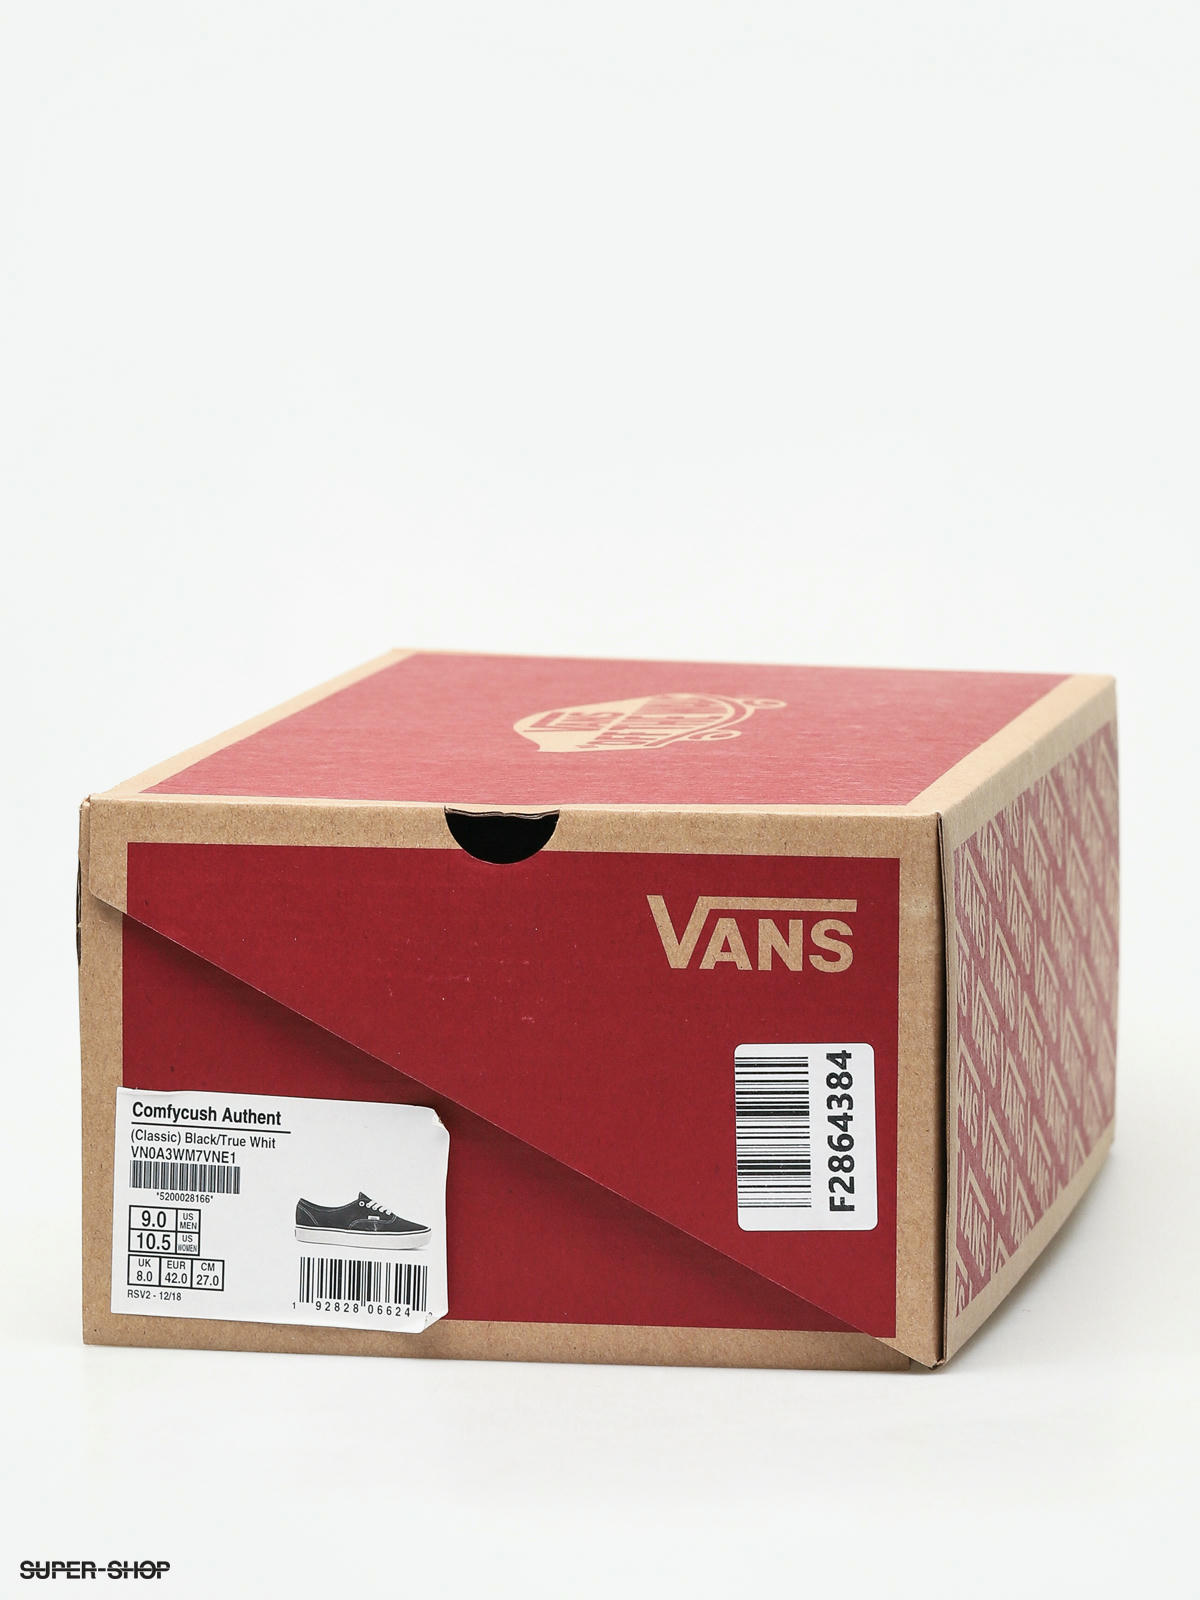 vans authentic shoes box